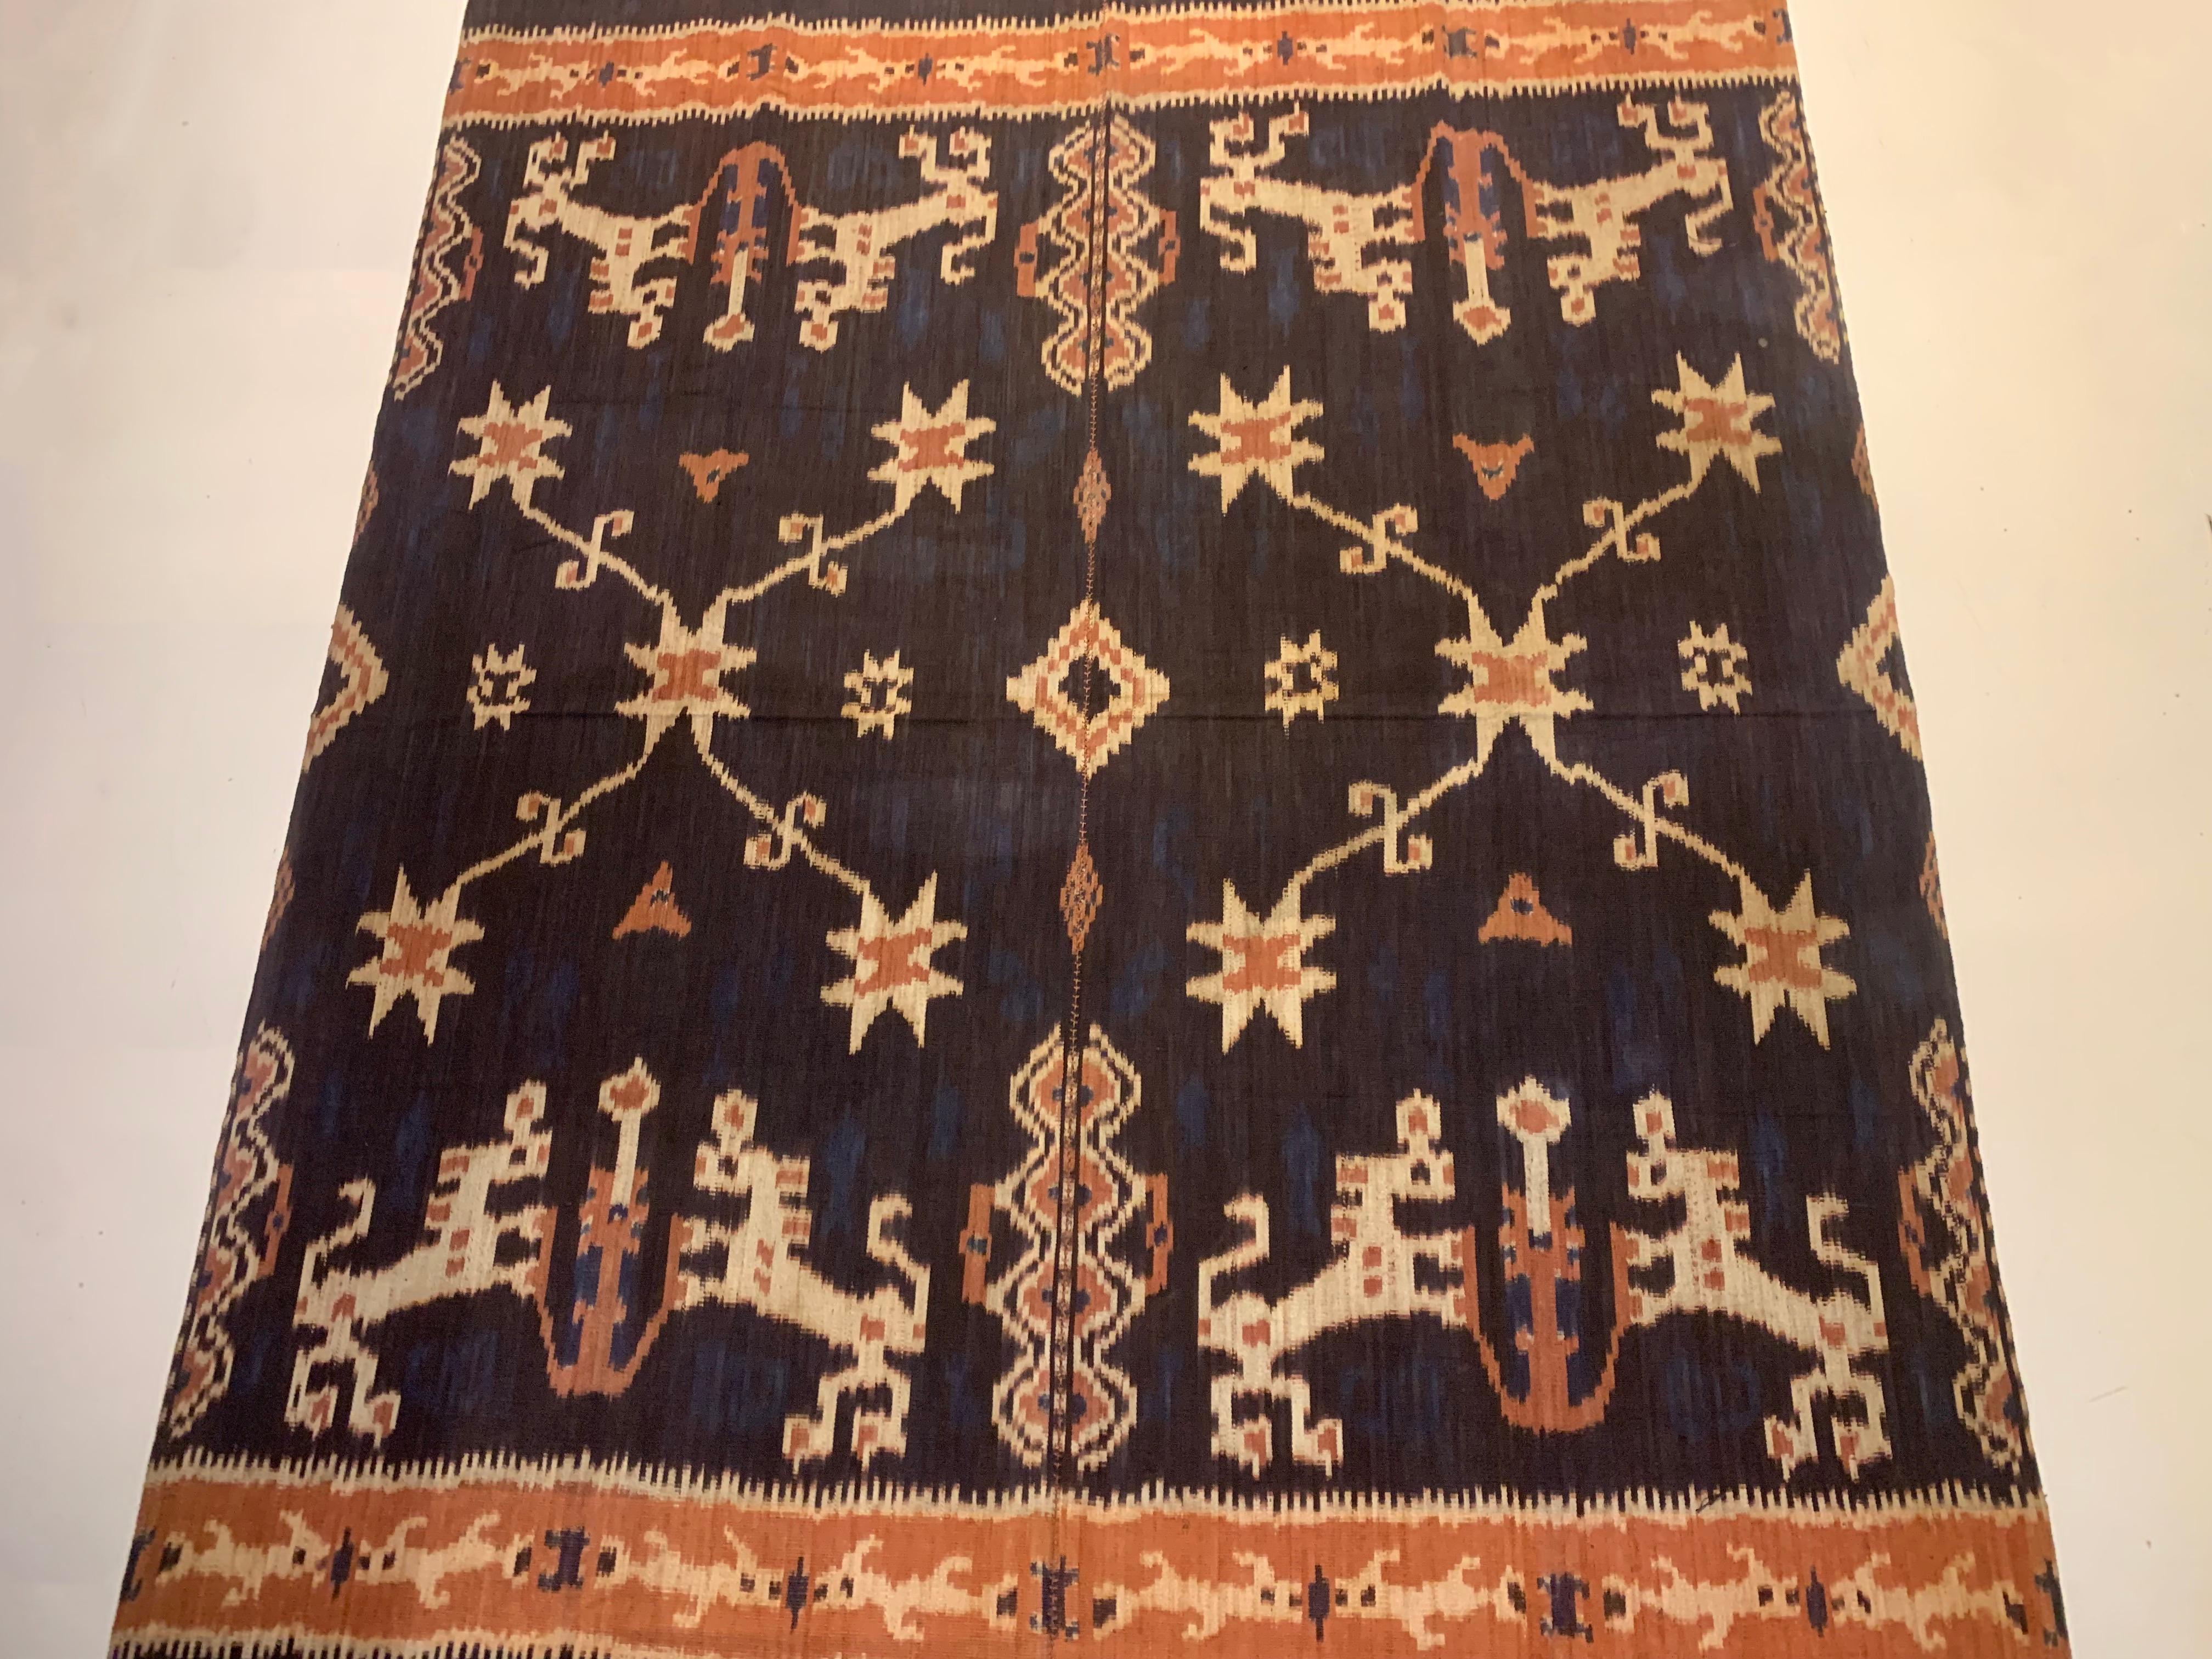 Dieses Ikat-Textil stammt von der Insel Sumba in Indonesien. Es wird mit natürlich gefärbten Garnen nach einer seit Generationen überlieferten Methode handgewebt. Es zeichnet sich durch eine atemberaubende Vielfalt an unterschiedlichen